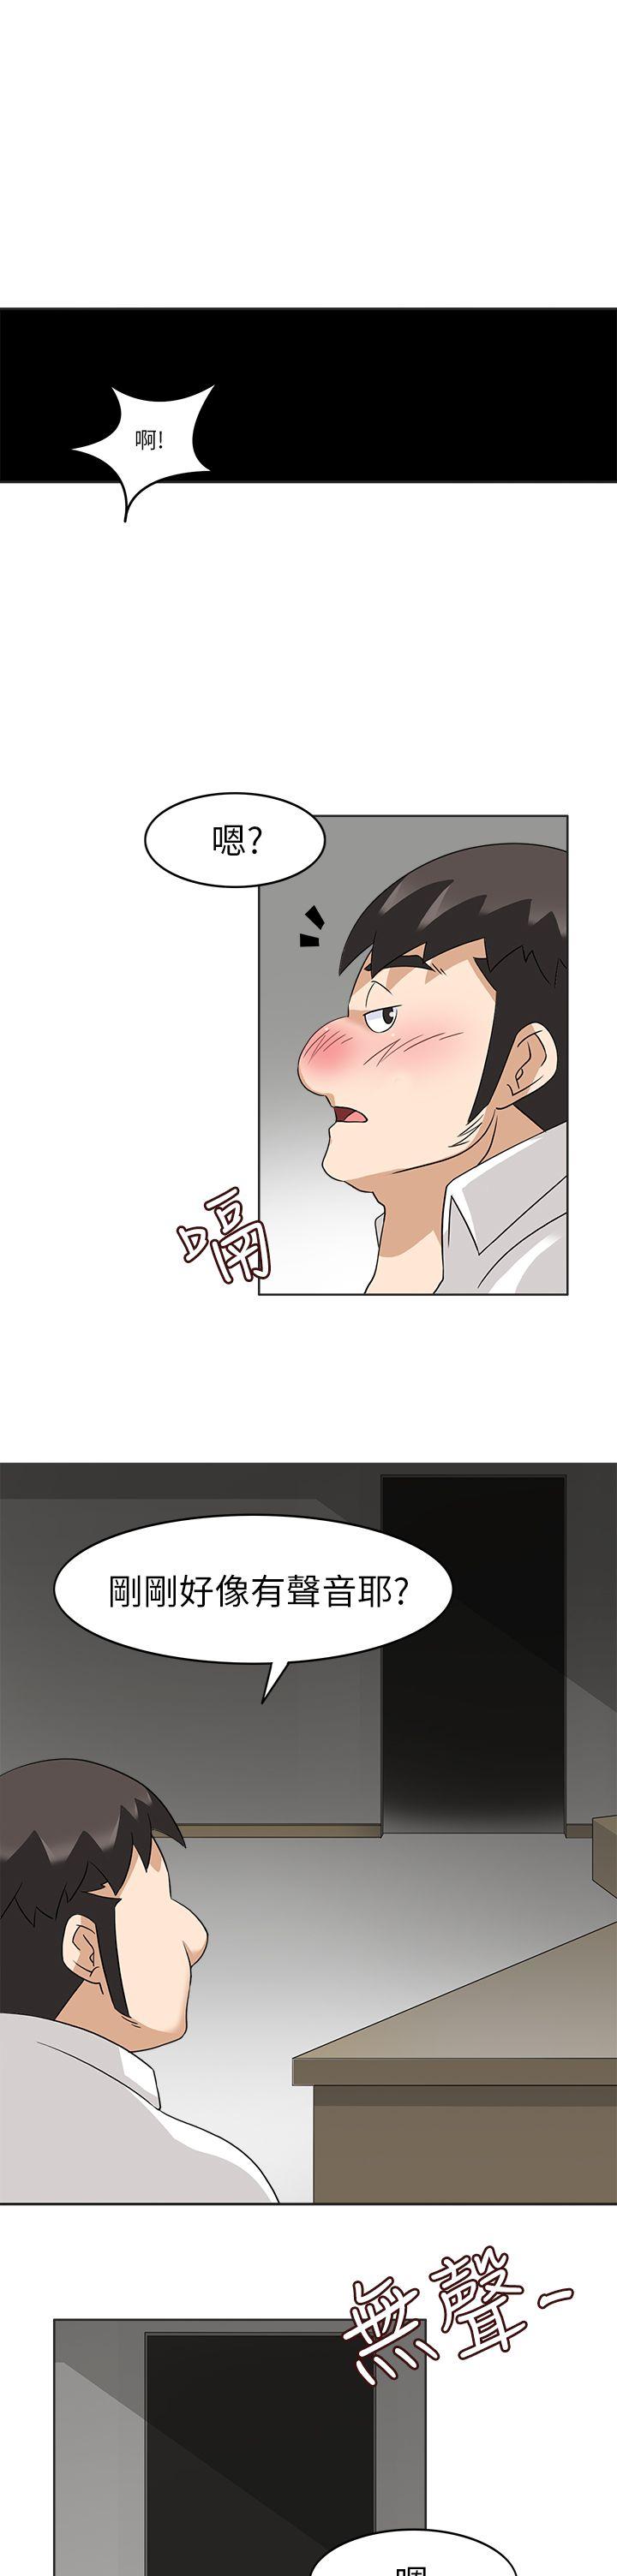 韩国污漫画 軍人的誘惑 第19话 21